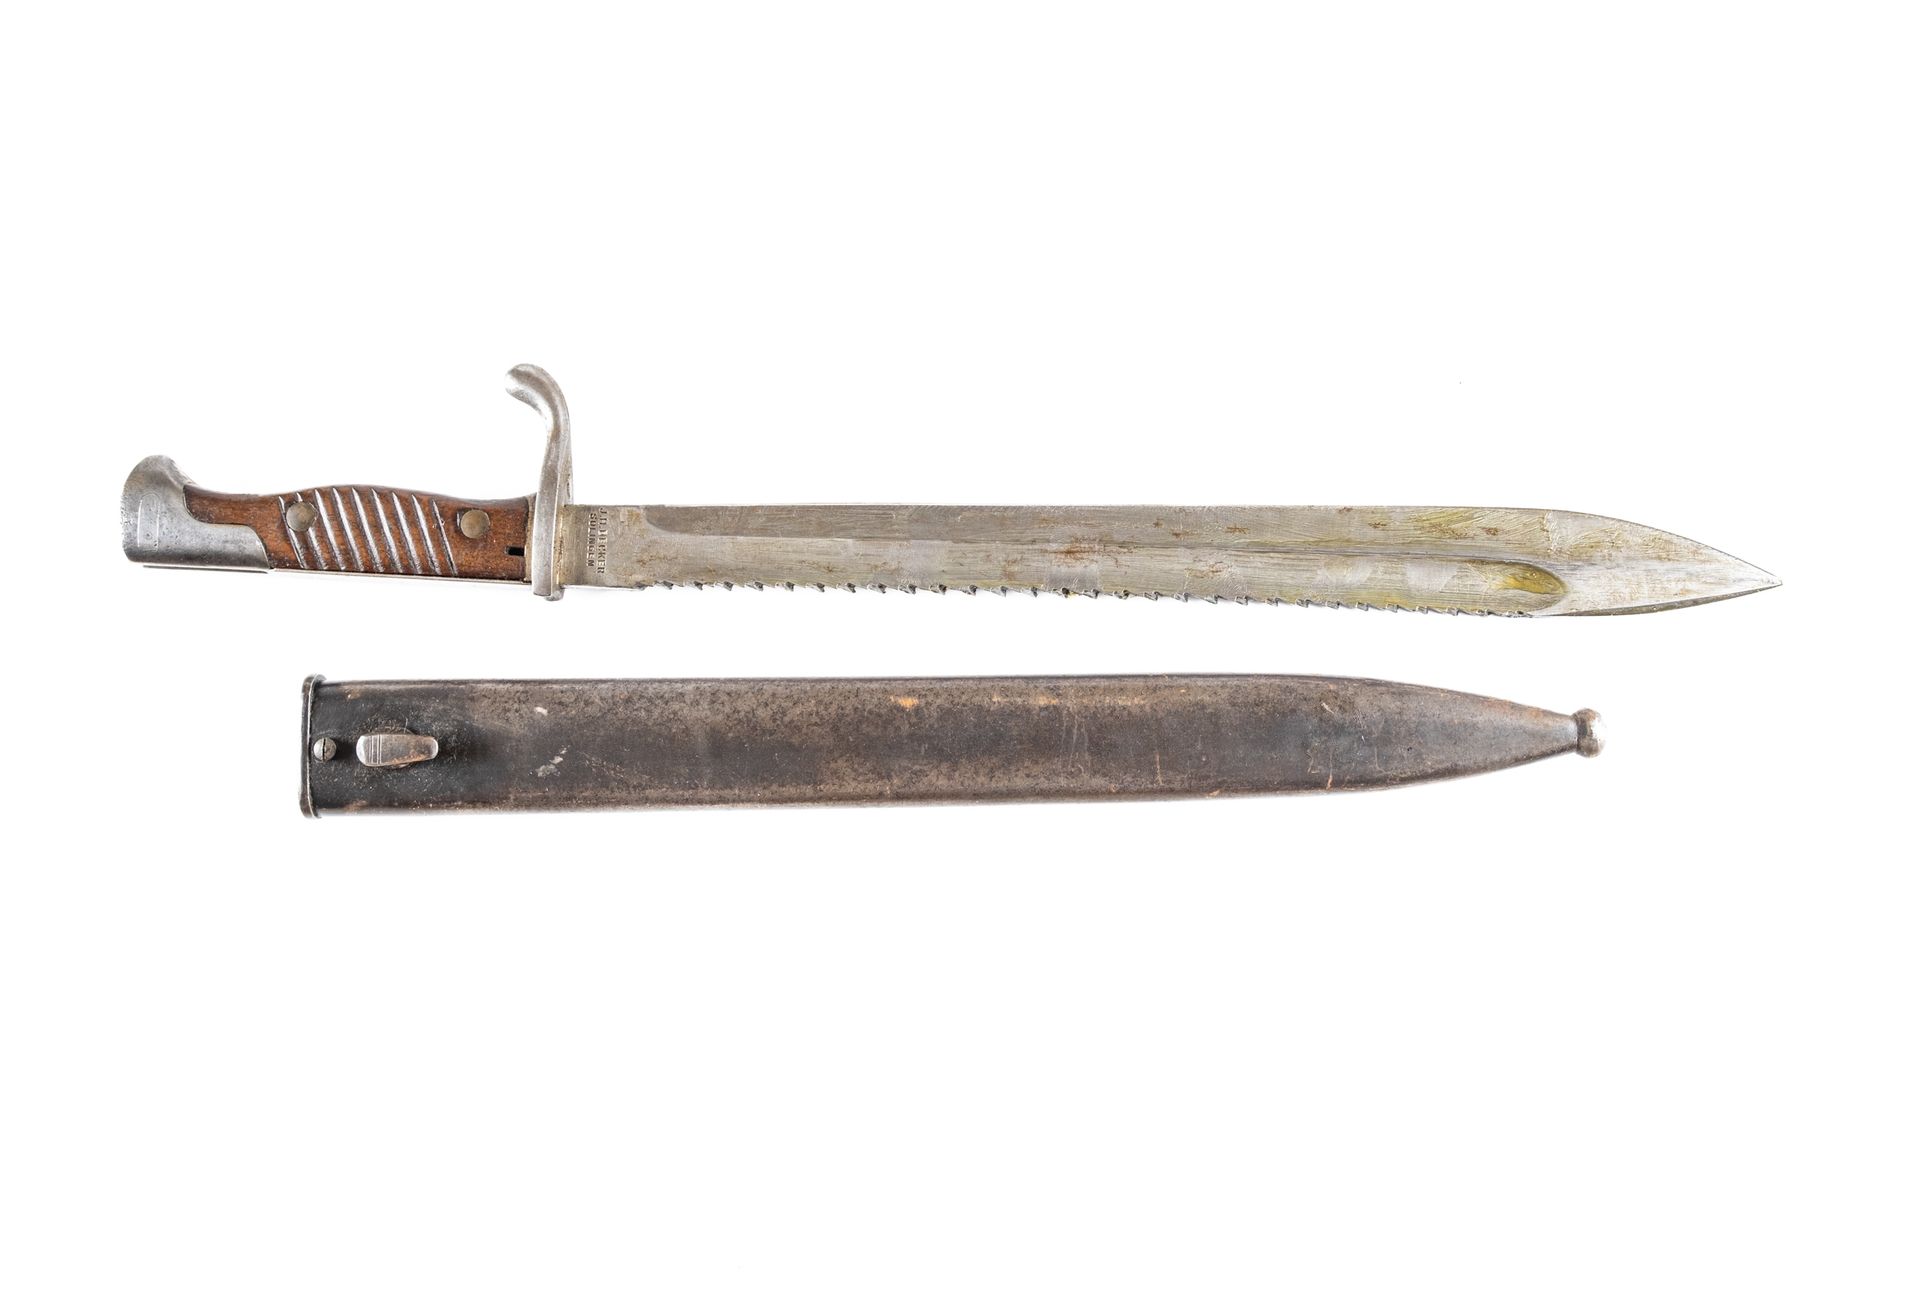 Null 工兵刺刀98-05。

贝克尔锯背刀片。古铜色铁片的刀鞘。

长度：50.4厘米。

A.B.E.